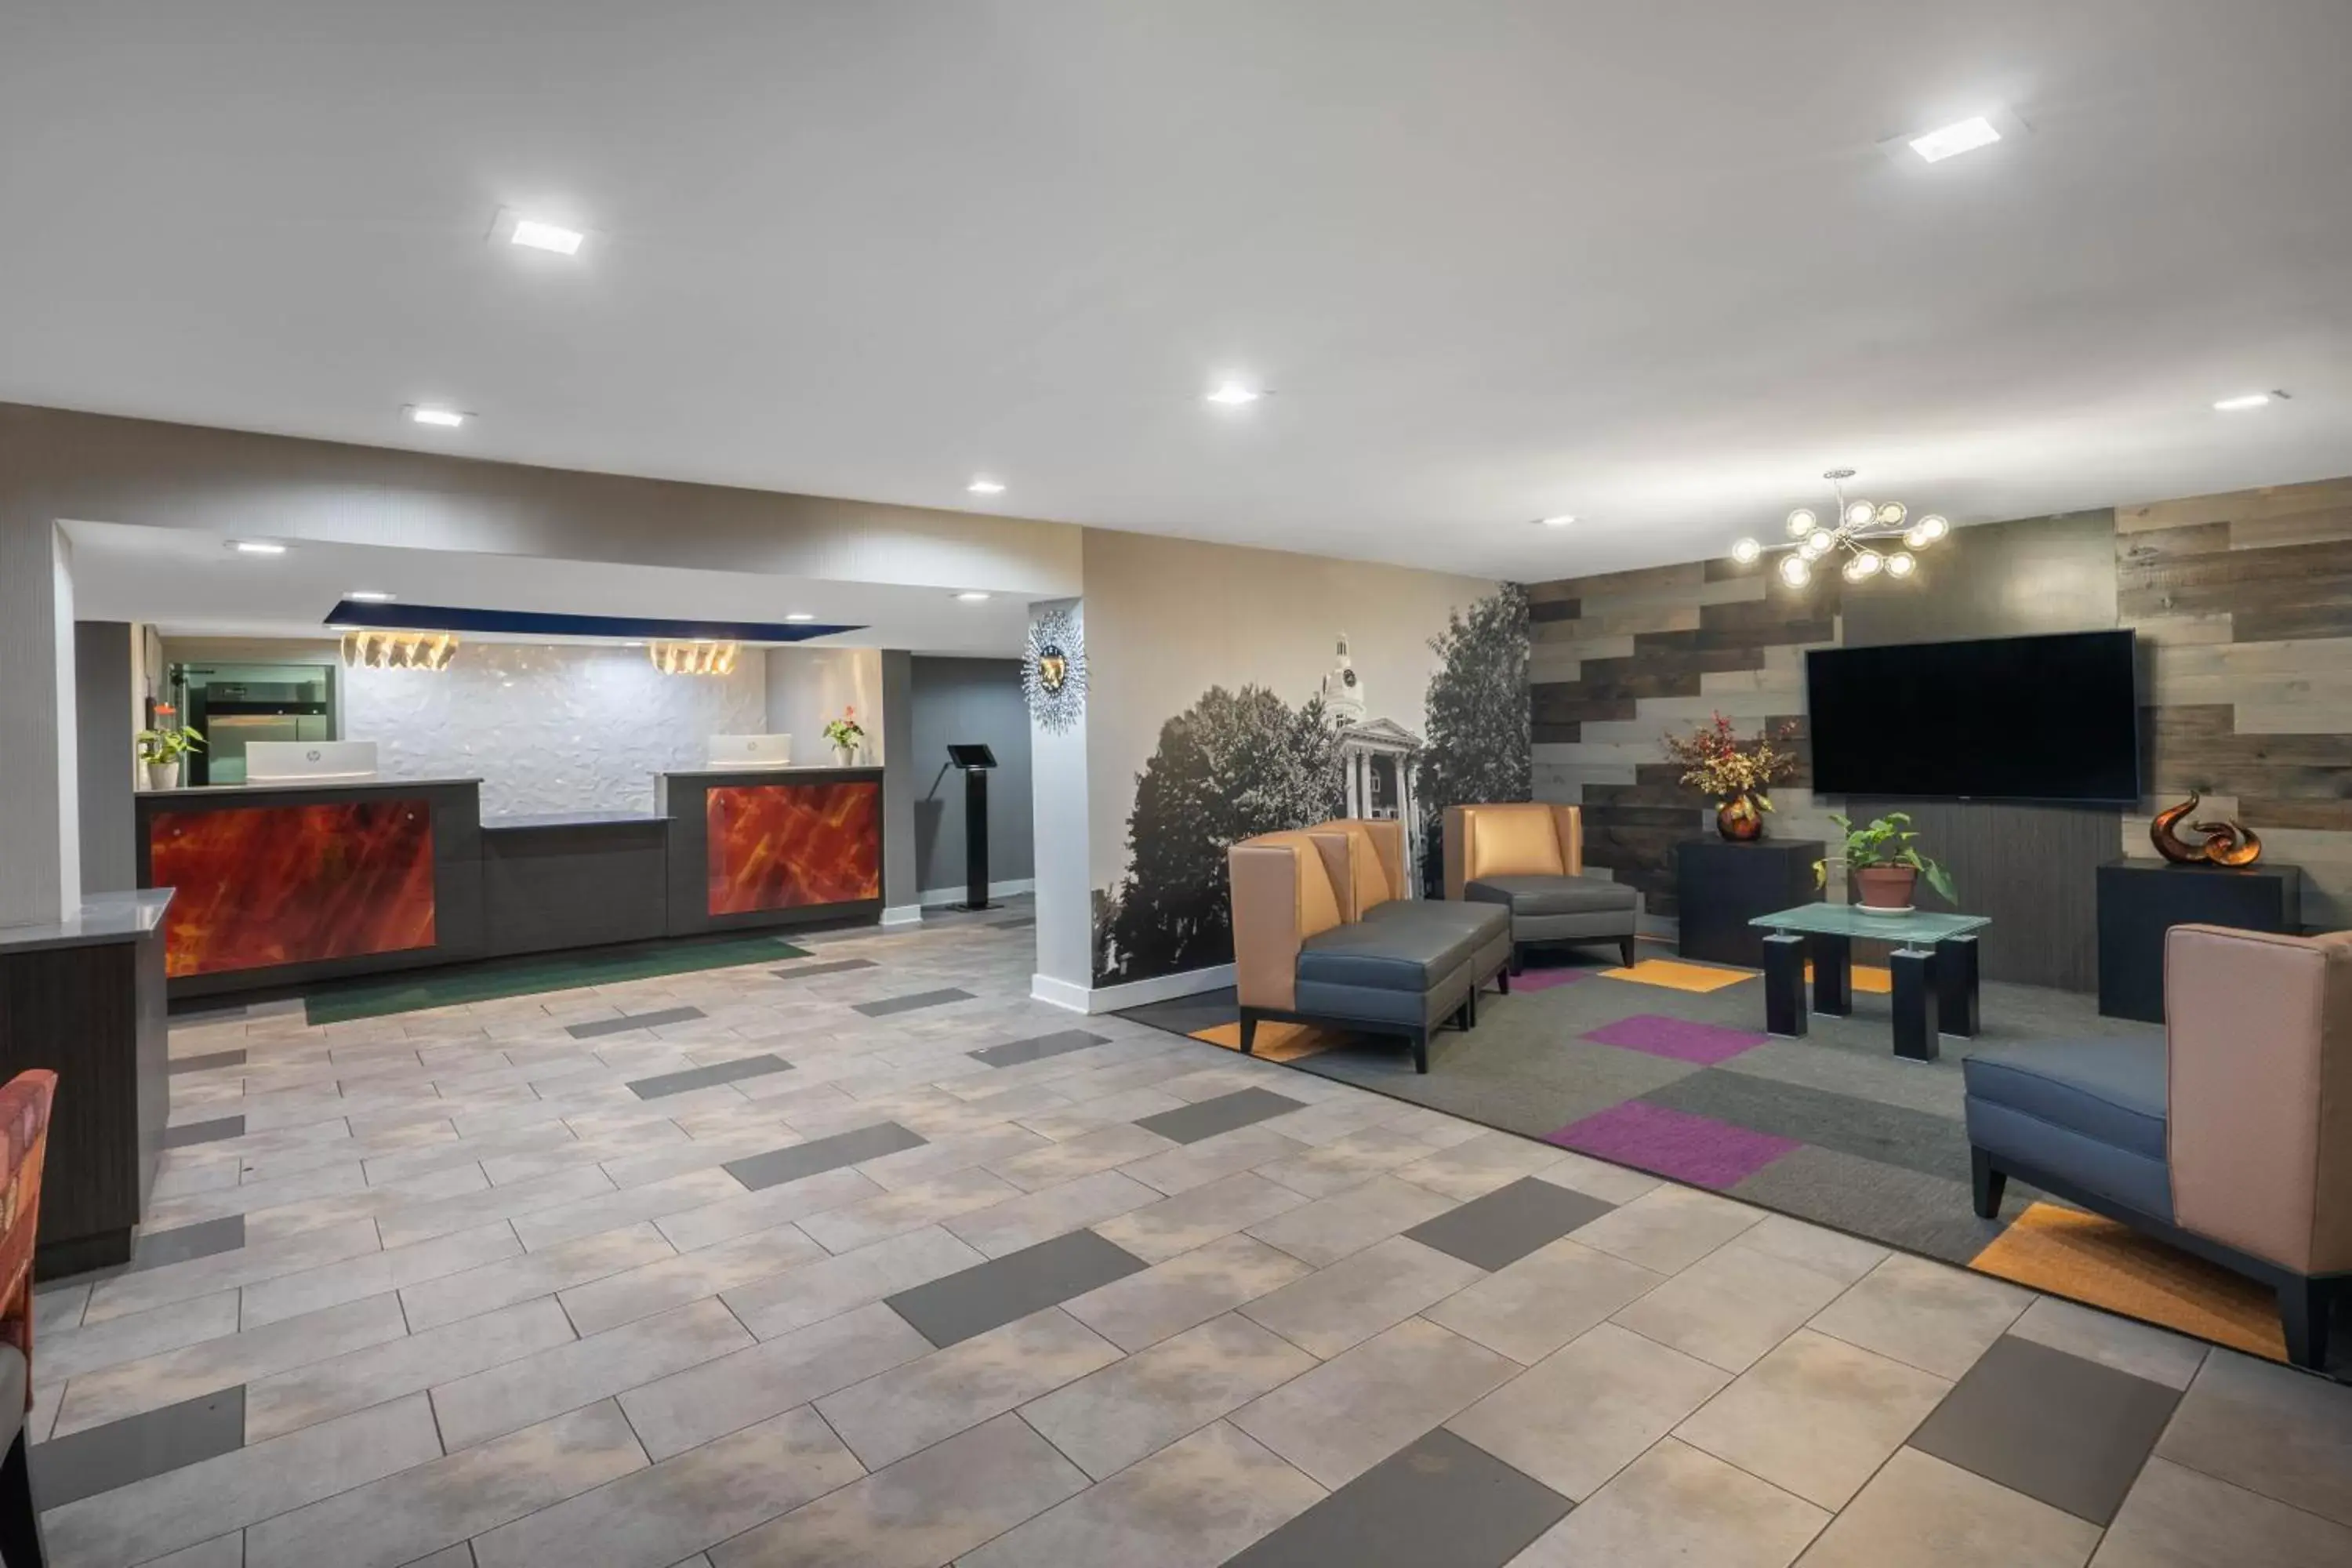 Lobby or reception, Lobby/Reception in Baymont by Wyndham Murfreesboro